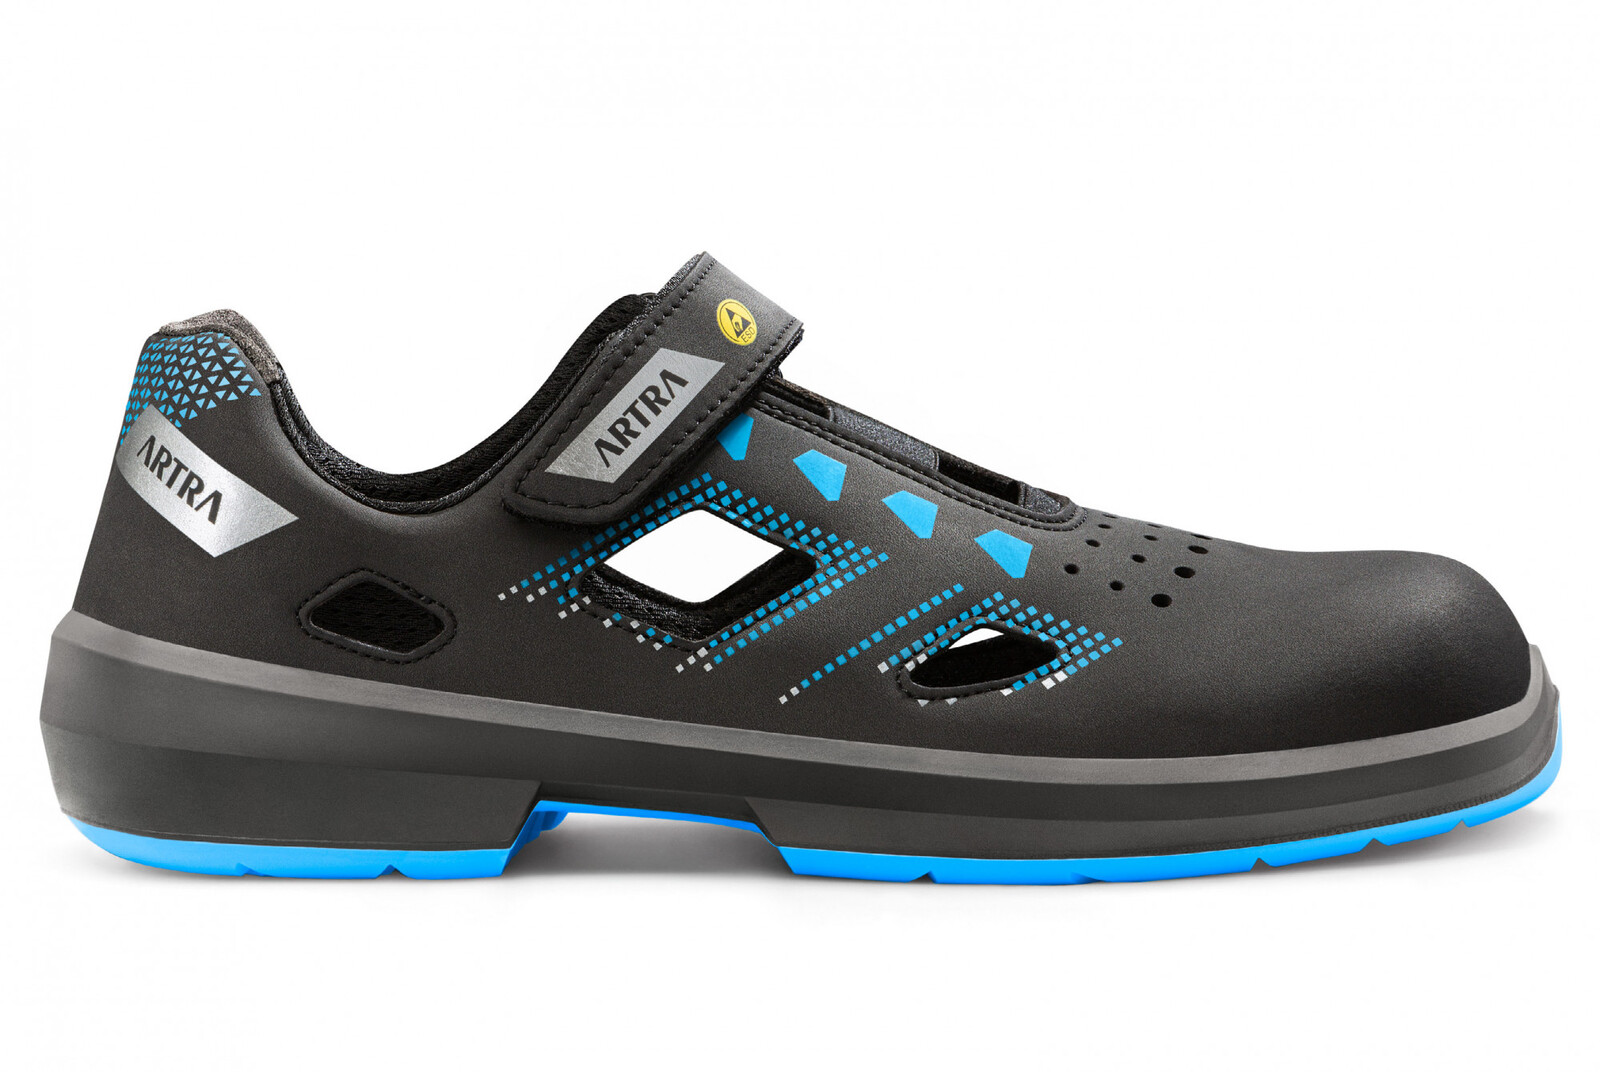 Bezpečnostné sandále Artra Arzo 805 619090 S1P SRC ESD MF - veľkosť: 48, farba: čierna/modrá